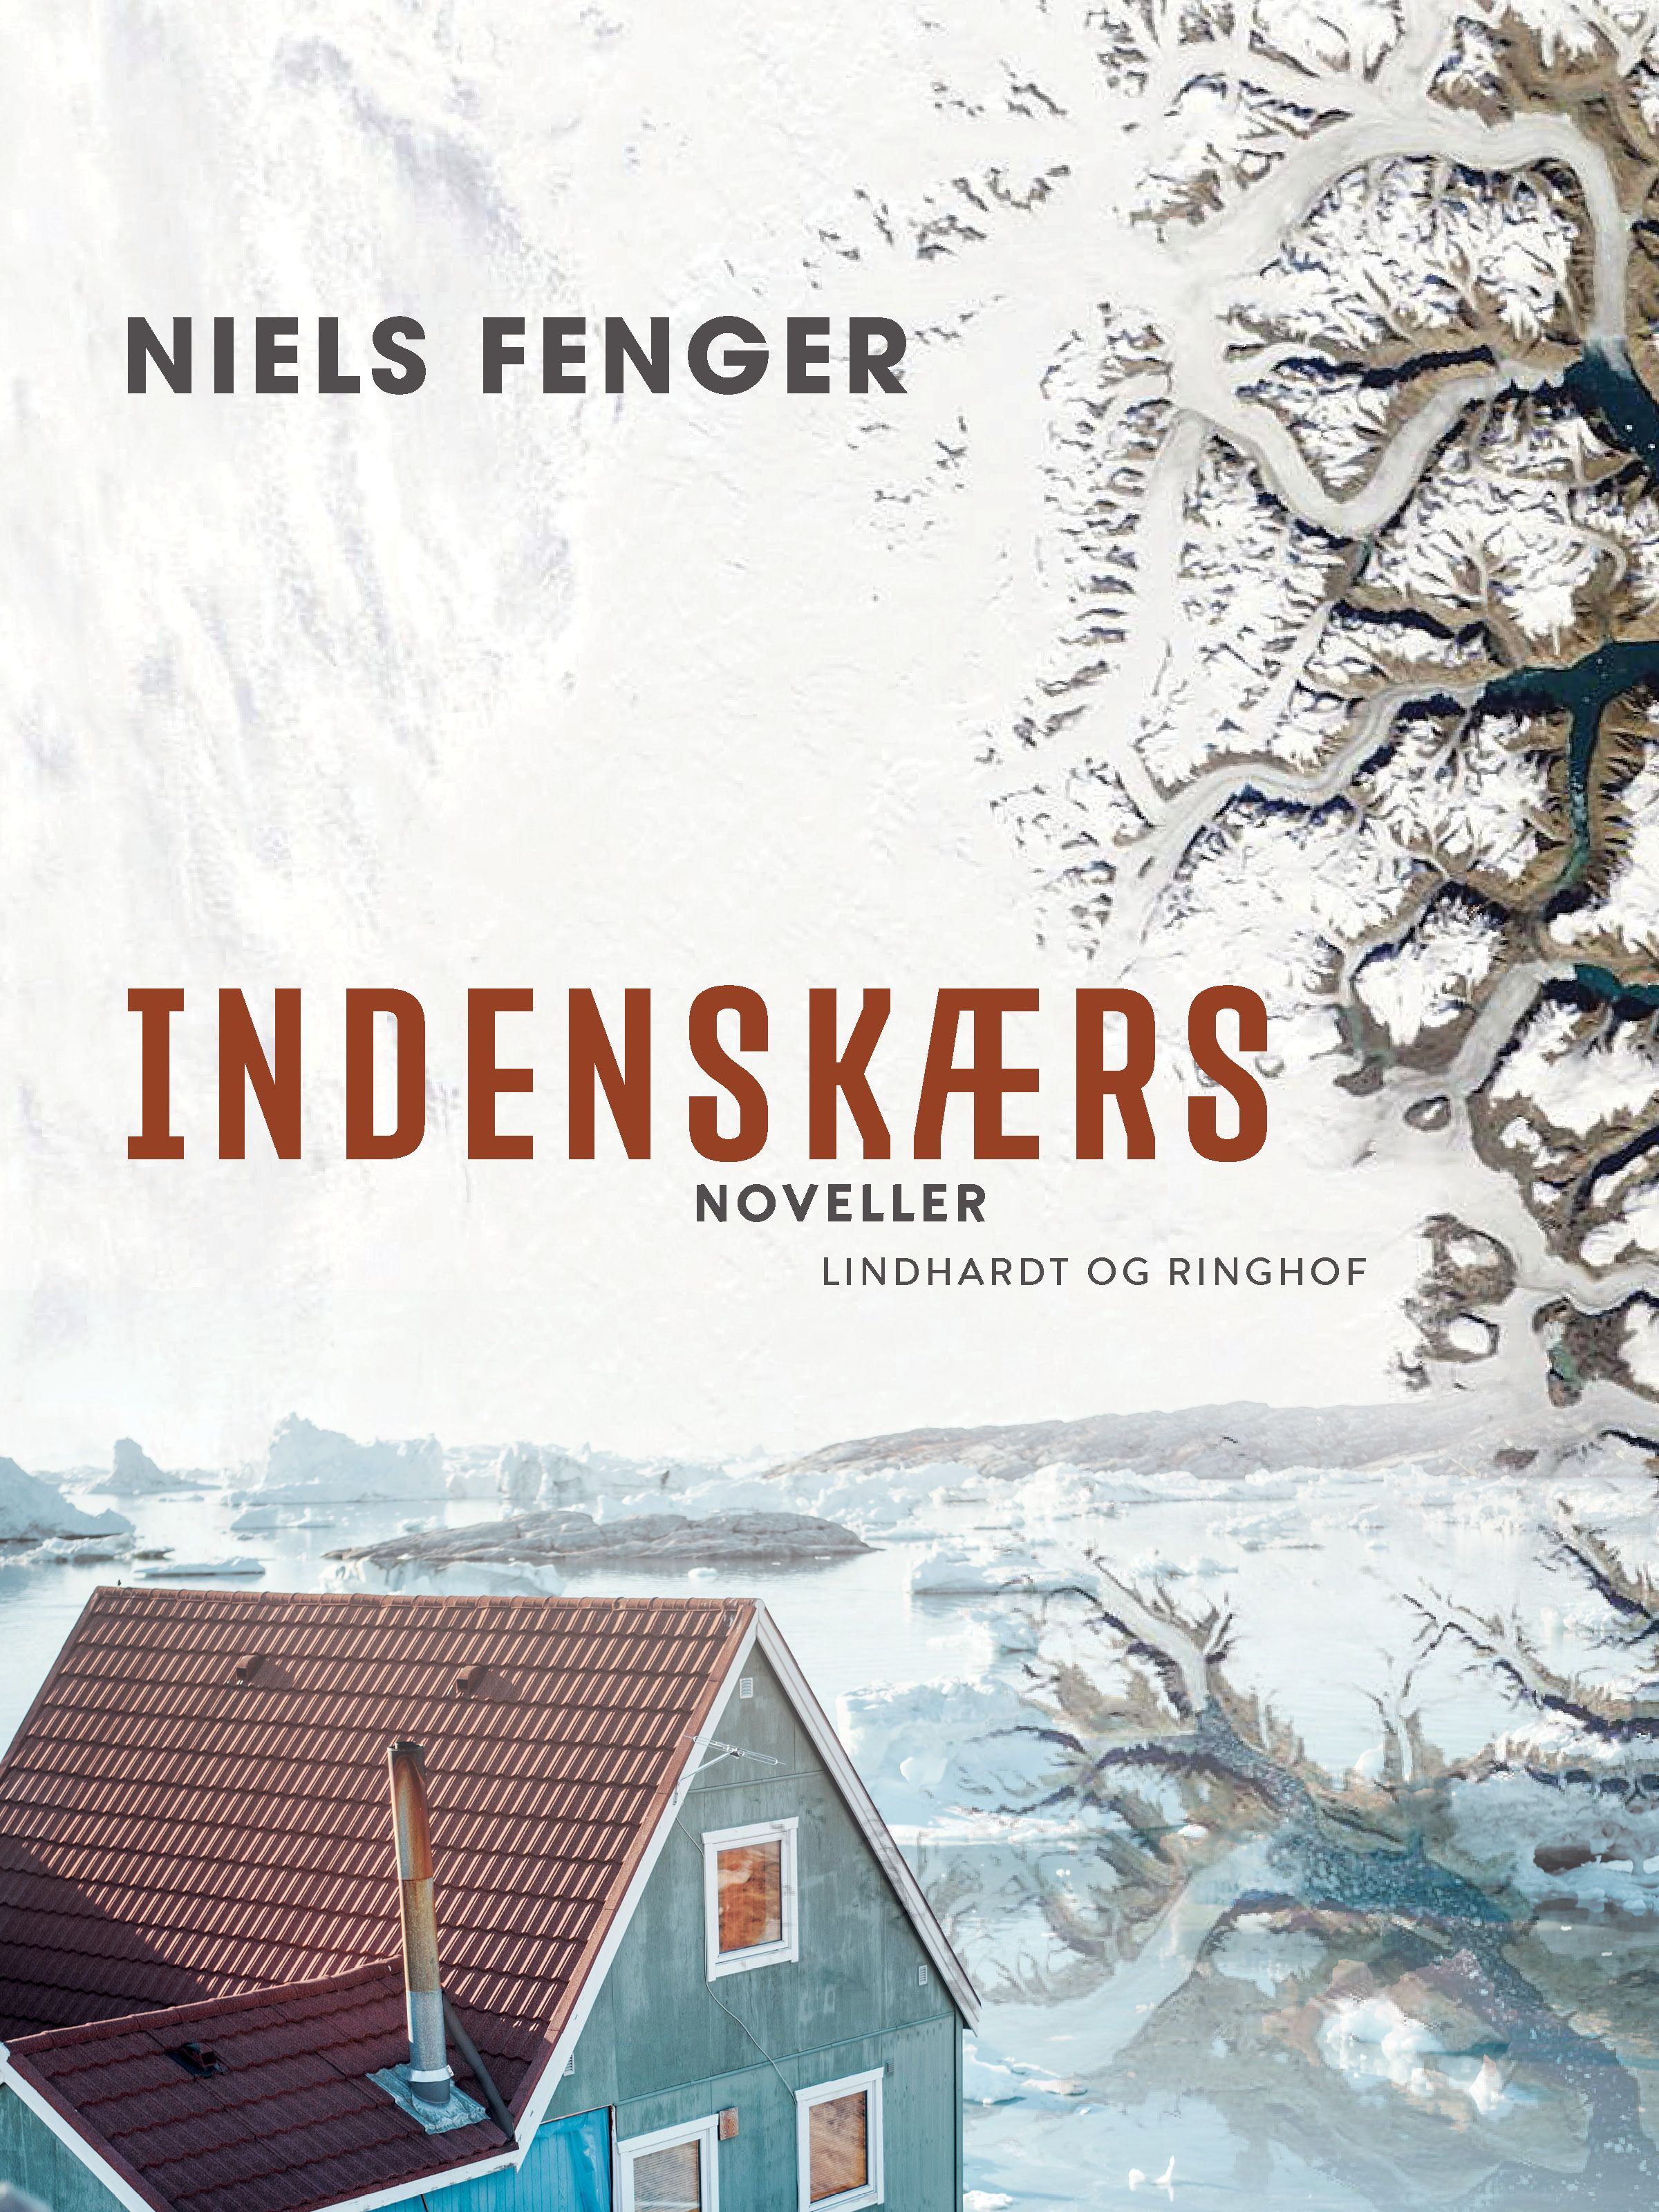 Indenskærs, e-bok av Niels Fenger